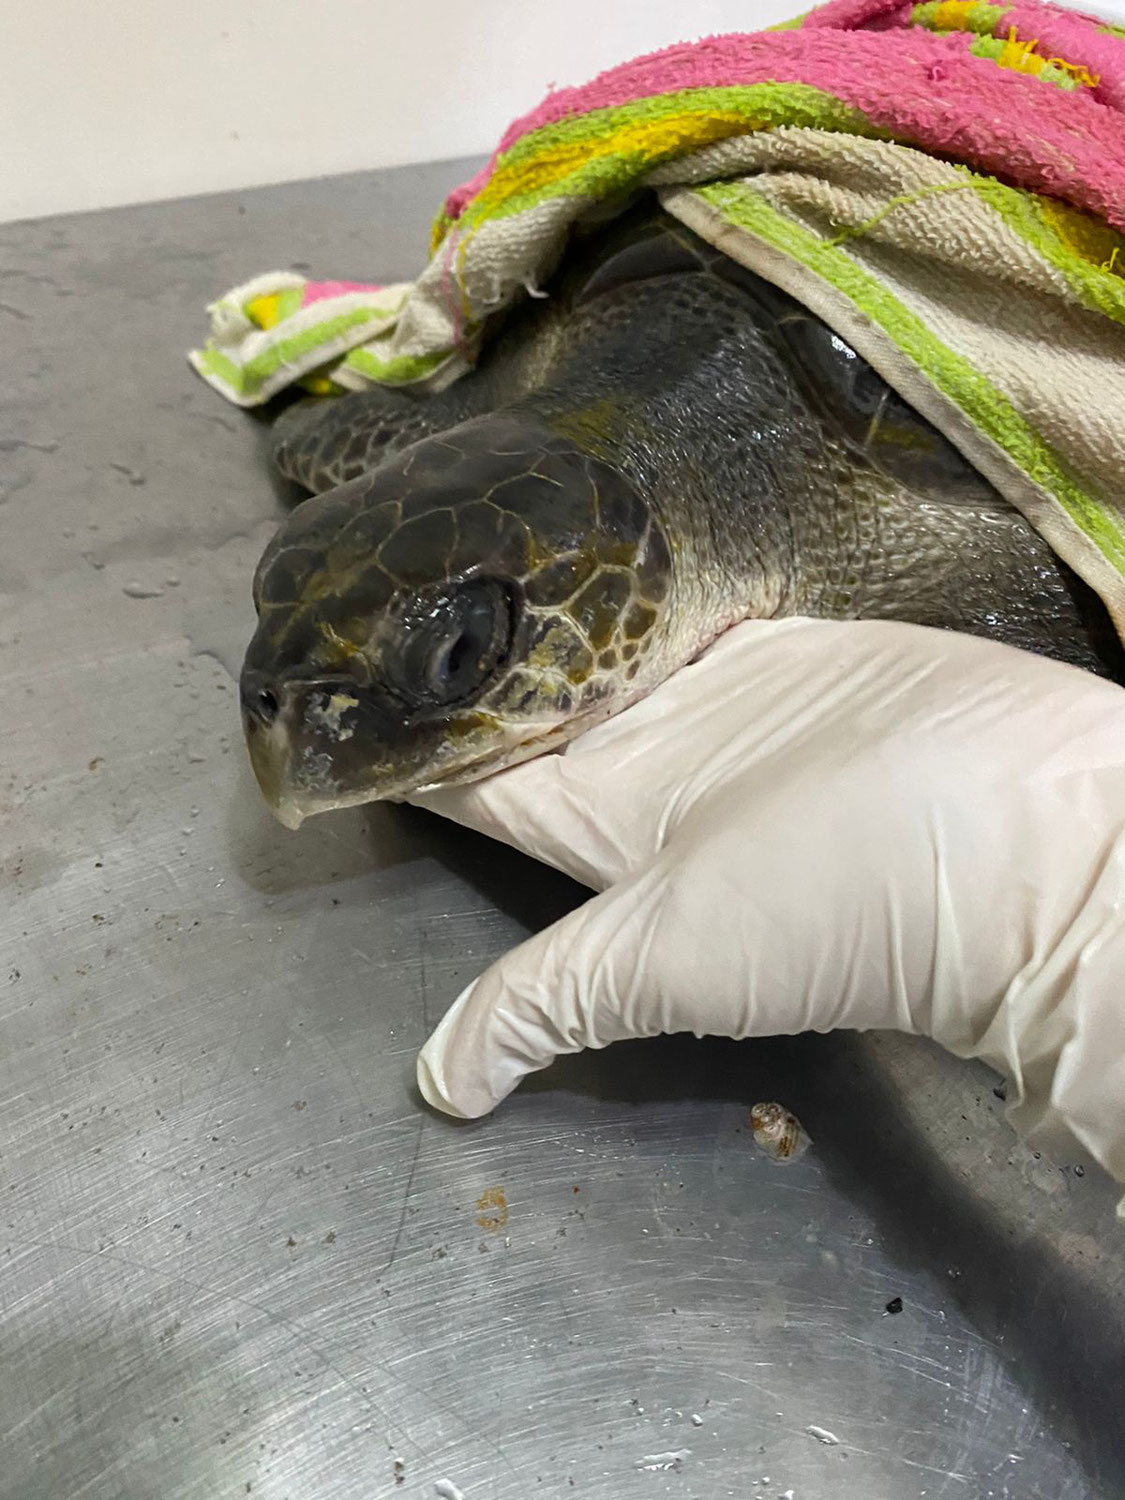 Turtle rescue and plastic Struggle